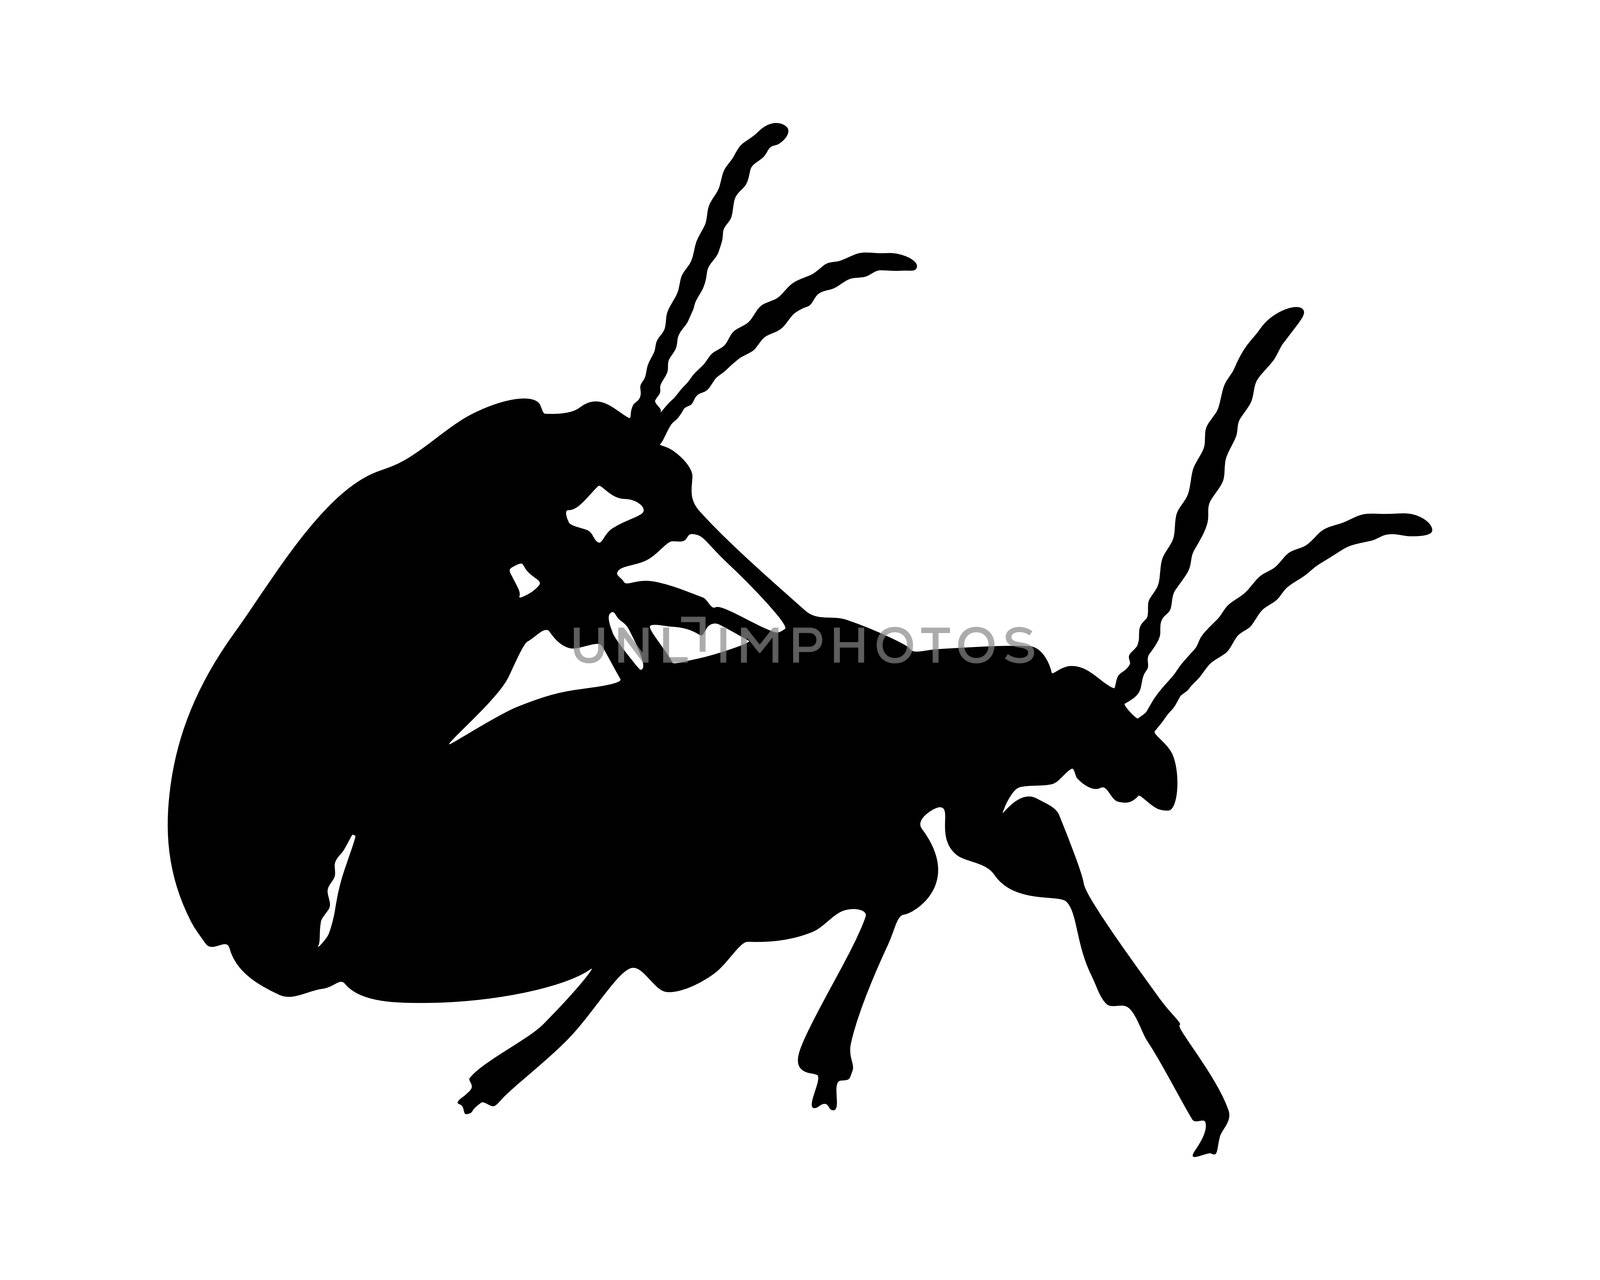 Beetles in copulation by rbiedermann